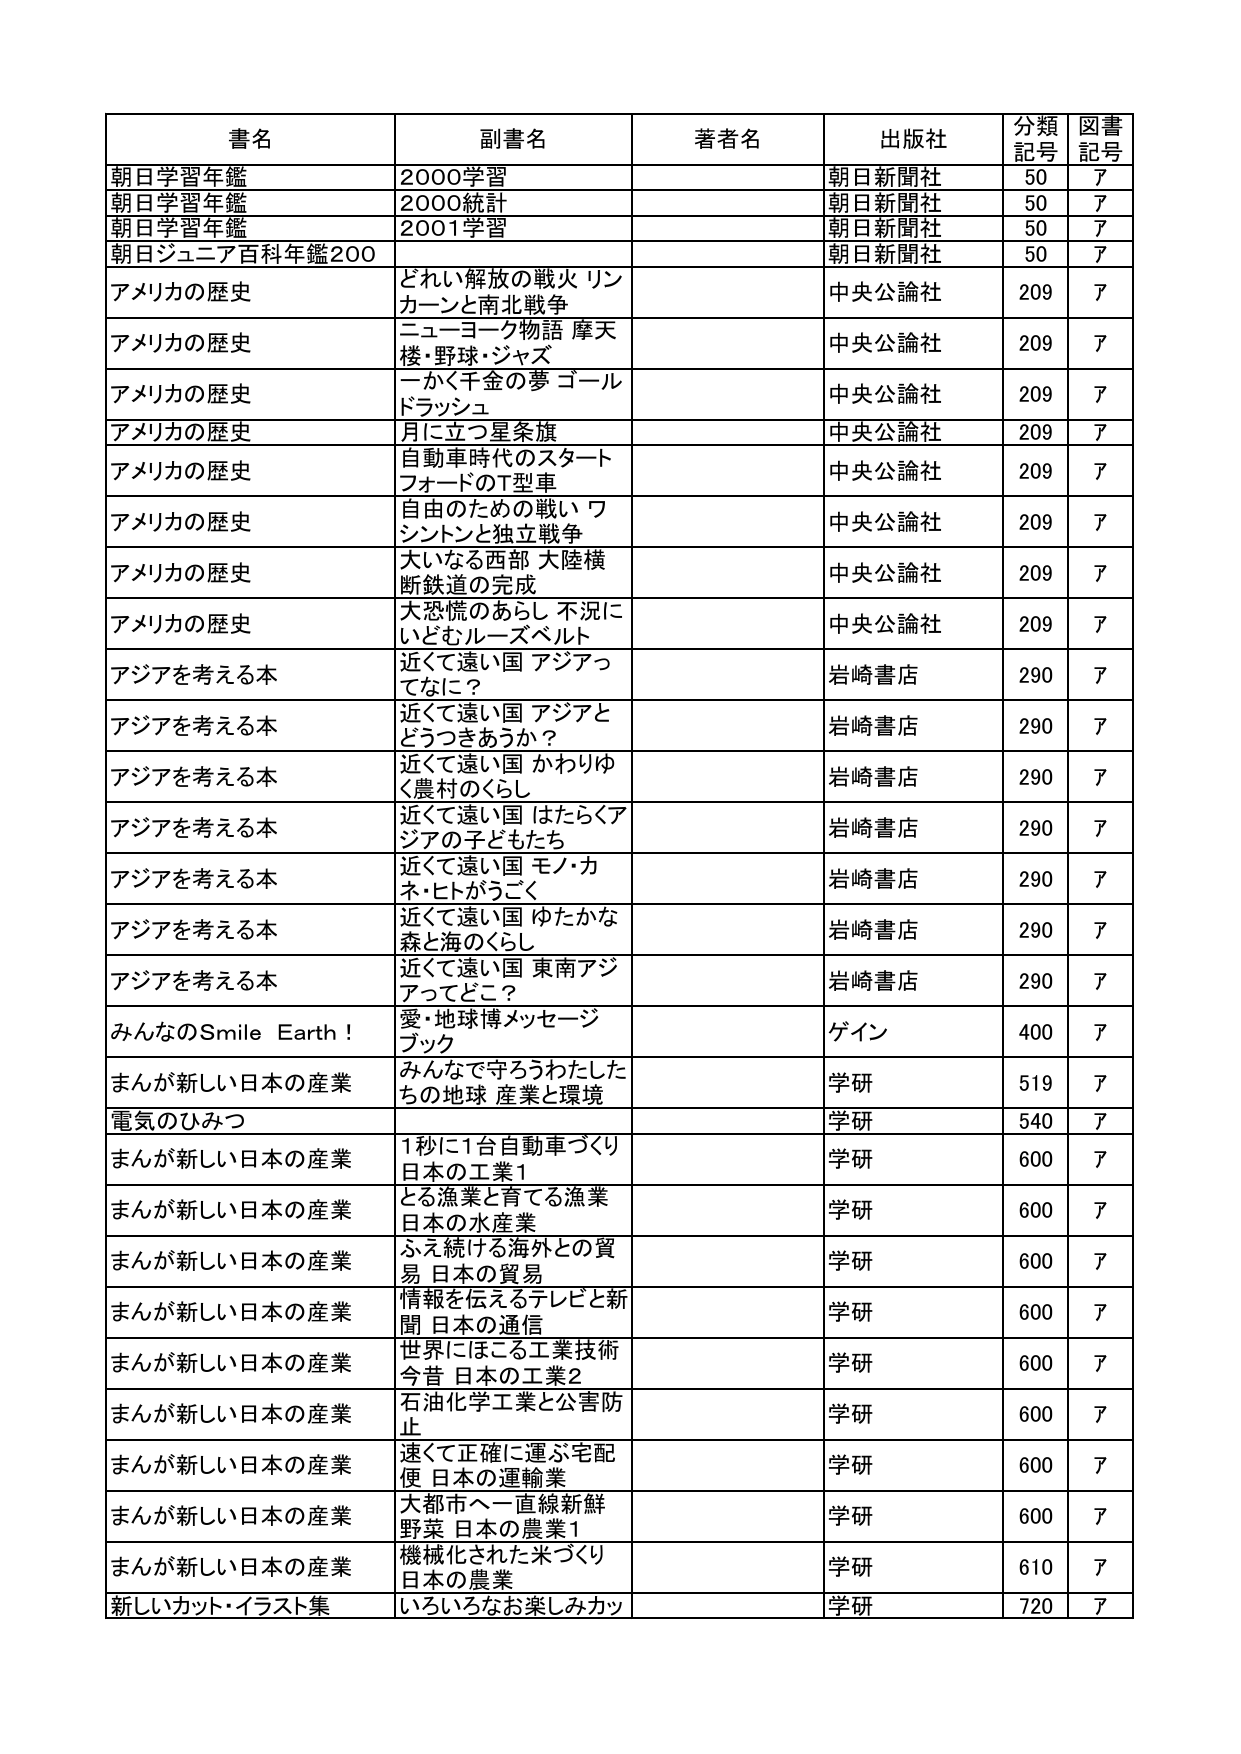 書名 副書名 著者名 出版社 分類 記号 図書 記号 朝日学習年鑑 2000